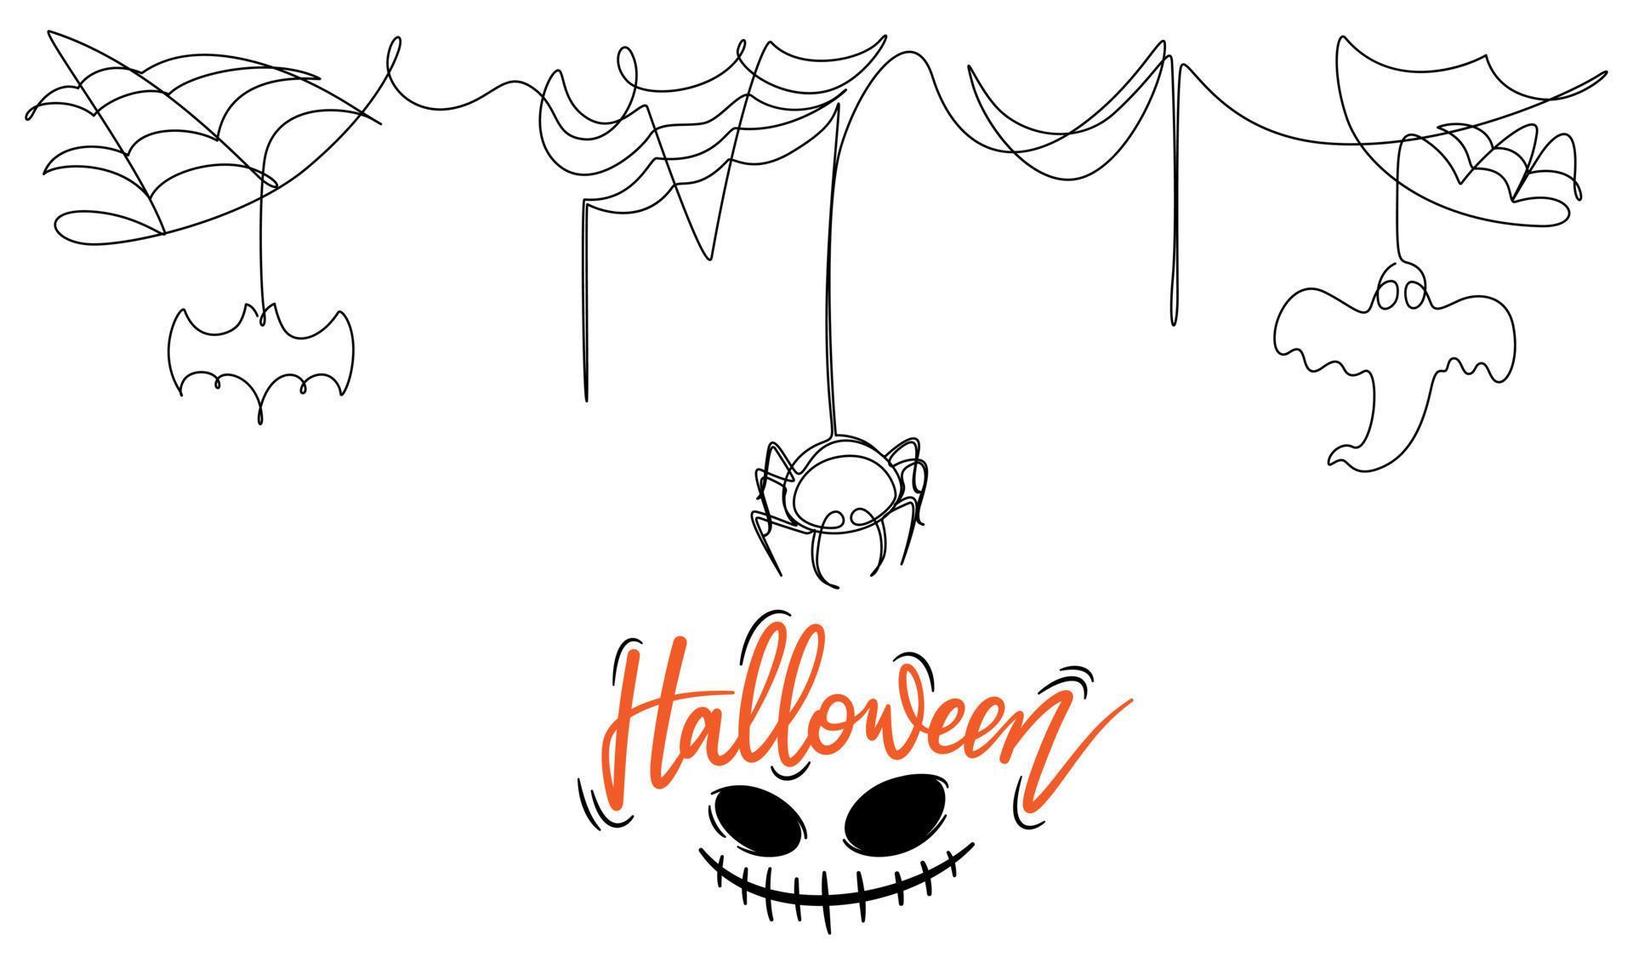 un disegno a tratteggio dell'illustrazione spettrale di vettore della decorazione della festa di halloween